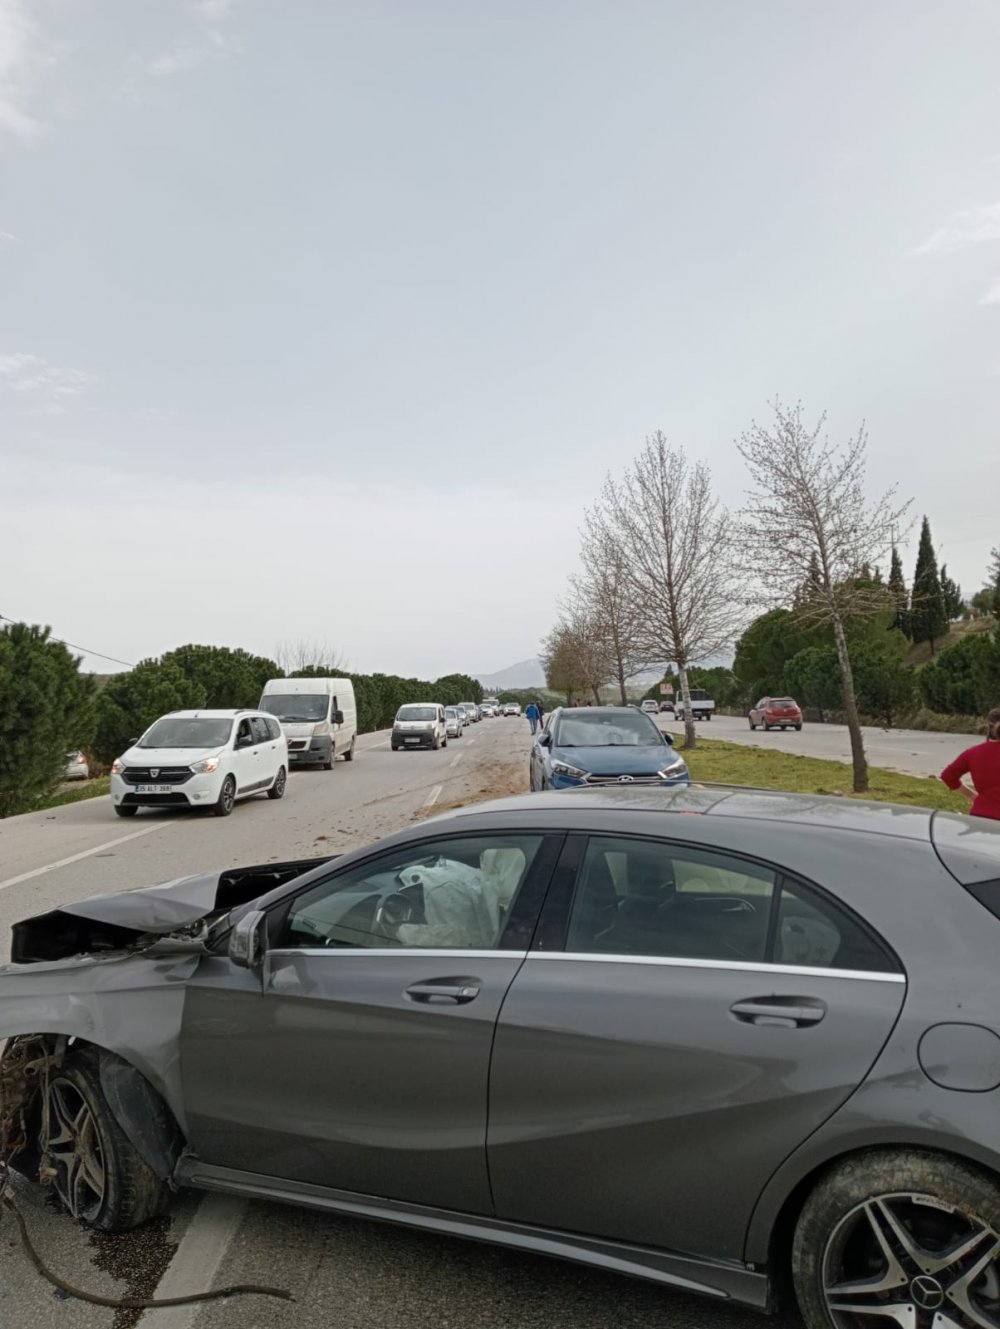 Denizli’nin Sarayköy İlçesinde sürücüsünün direksiyon hâkimiyetini kaybettiği araç orta refüje çarptı. Çarpmanın etkisiyle aracın motoru 200 metre ileriye savrulurken, ortaya çıkan görüntü ise şok etti.